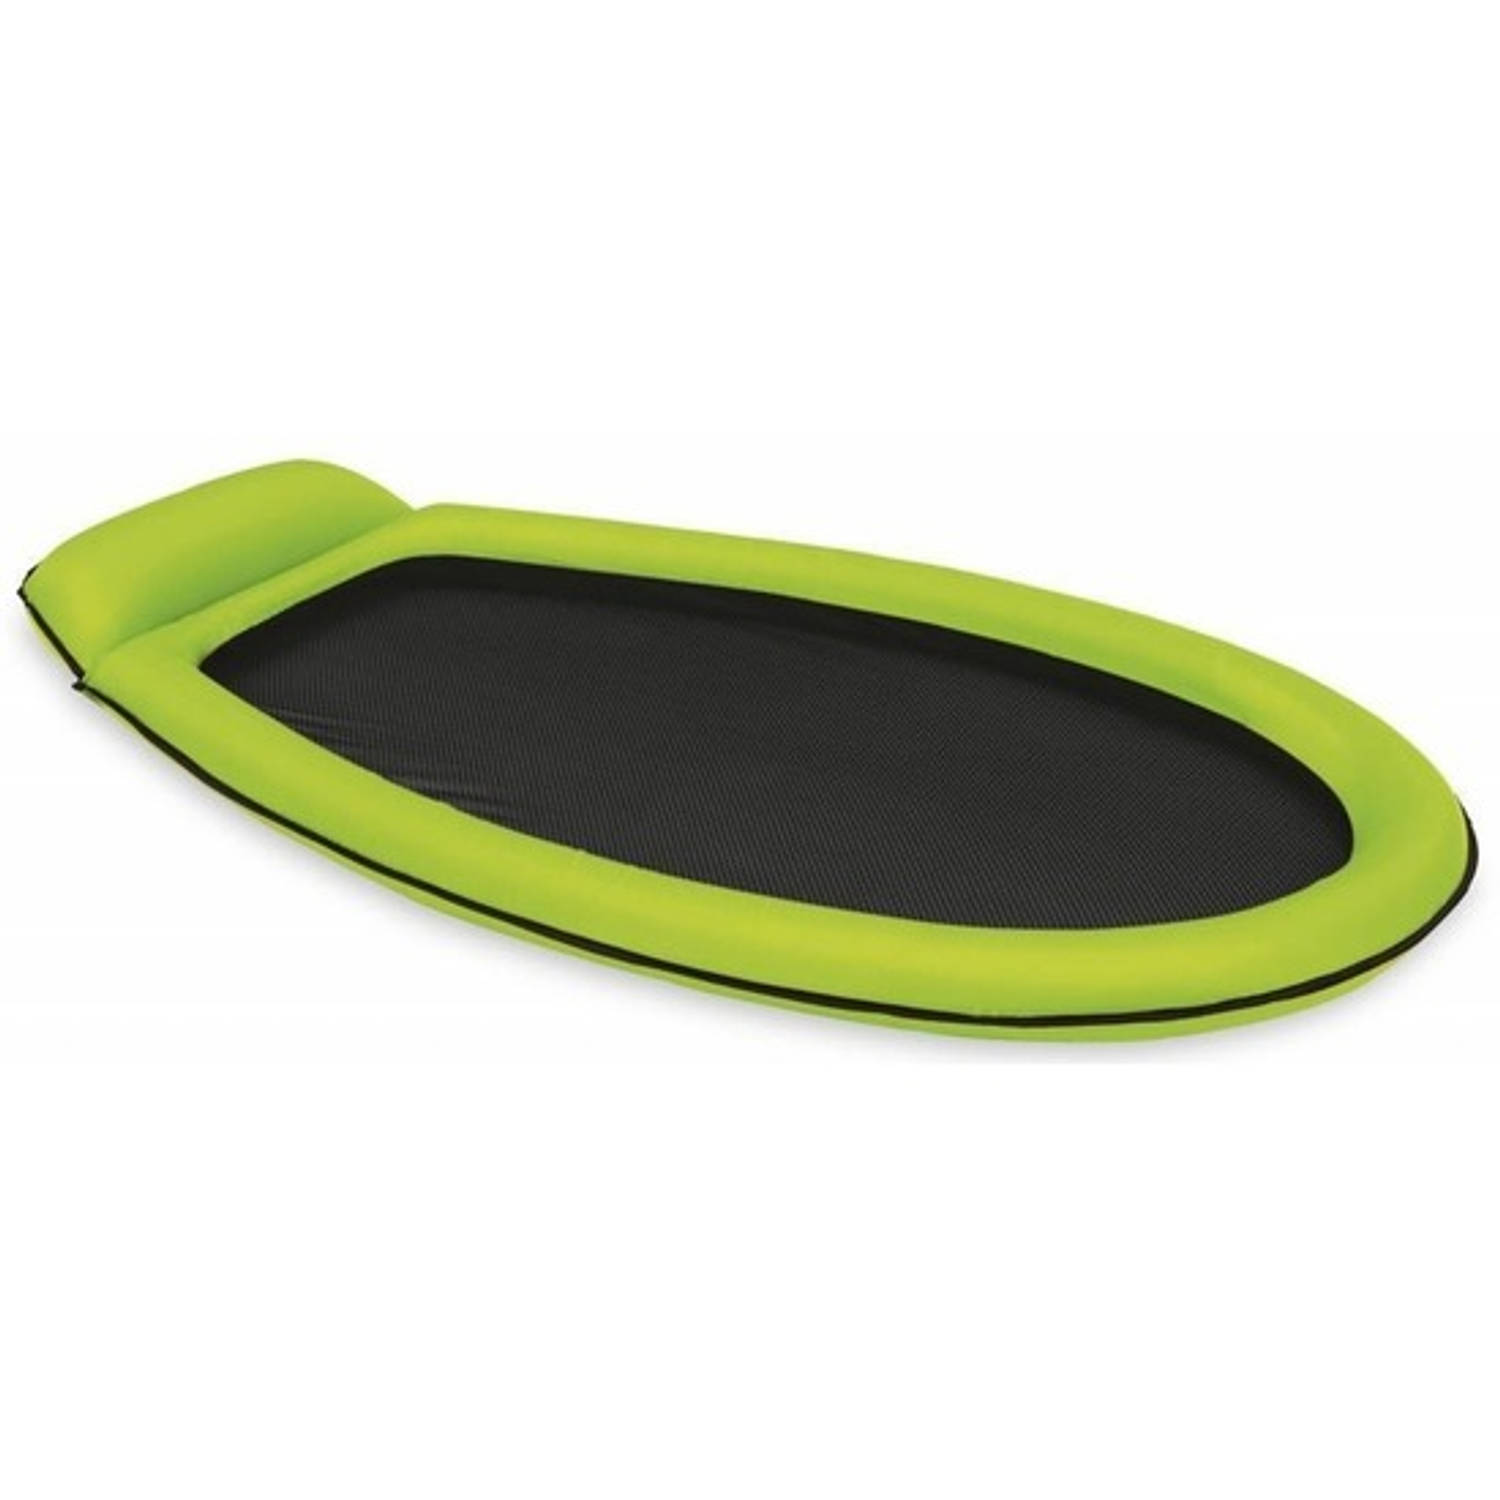 escort Spelen met Dertig Opblaasbaar Intex luchtbed/loungebed groen 178 x 94 cm - Luchtbed (zwembad)  | Blokker